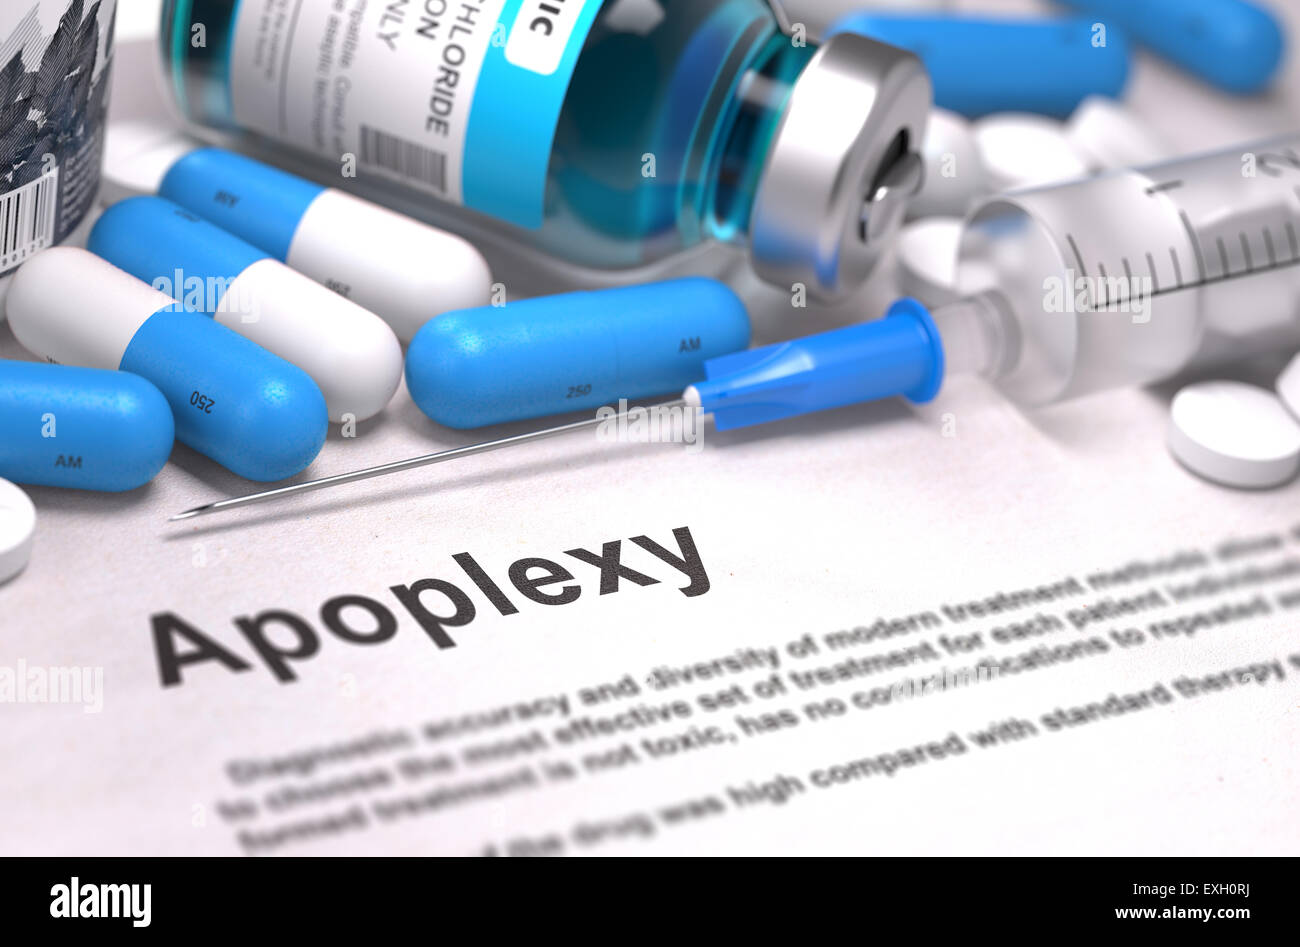 Diagnosis - Apoplexy. Medical Concept. Stock Photo